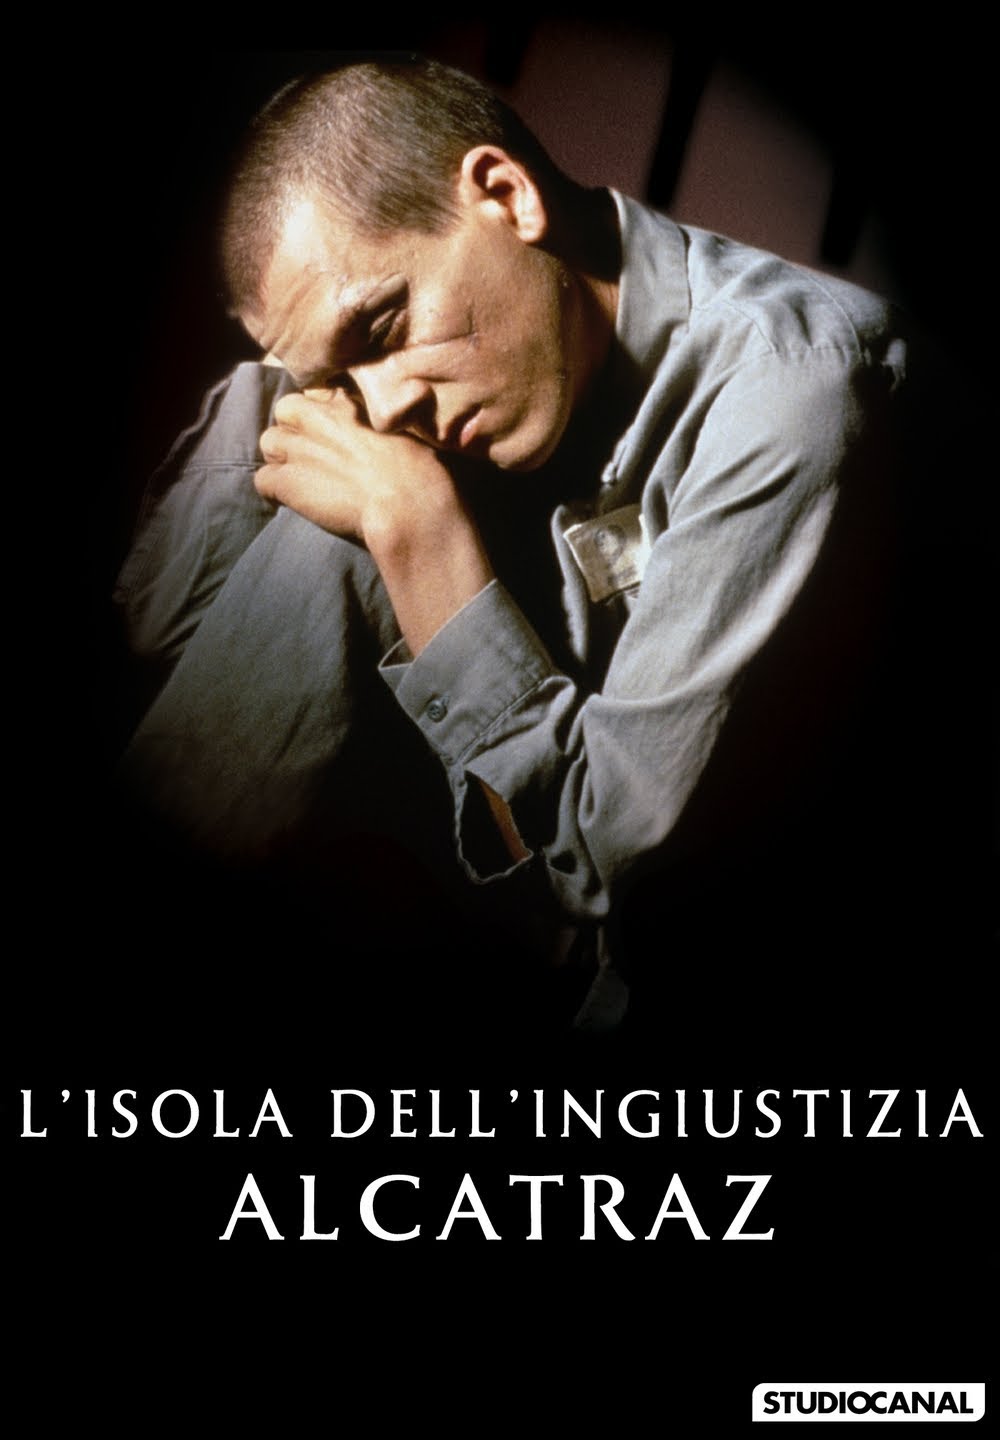 L’isola dell’ingiustizia – Alcatraz [HD] (1995)